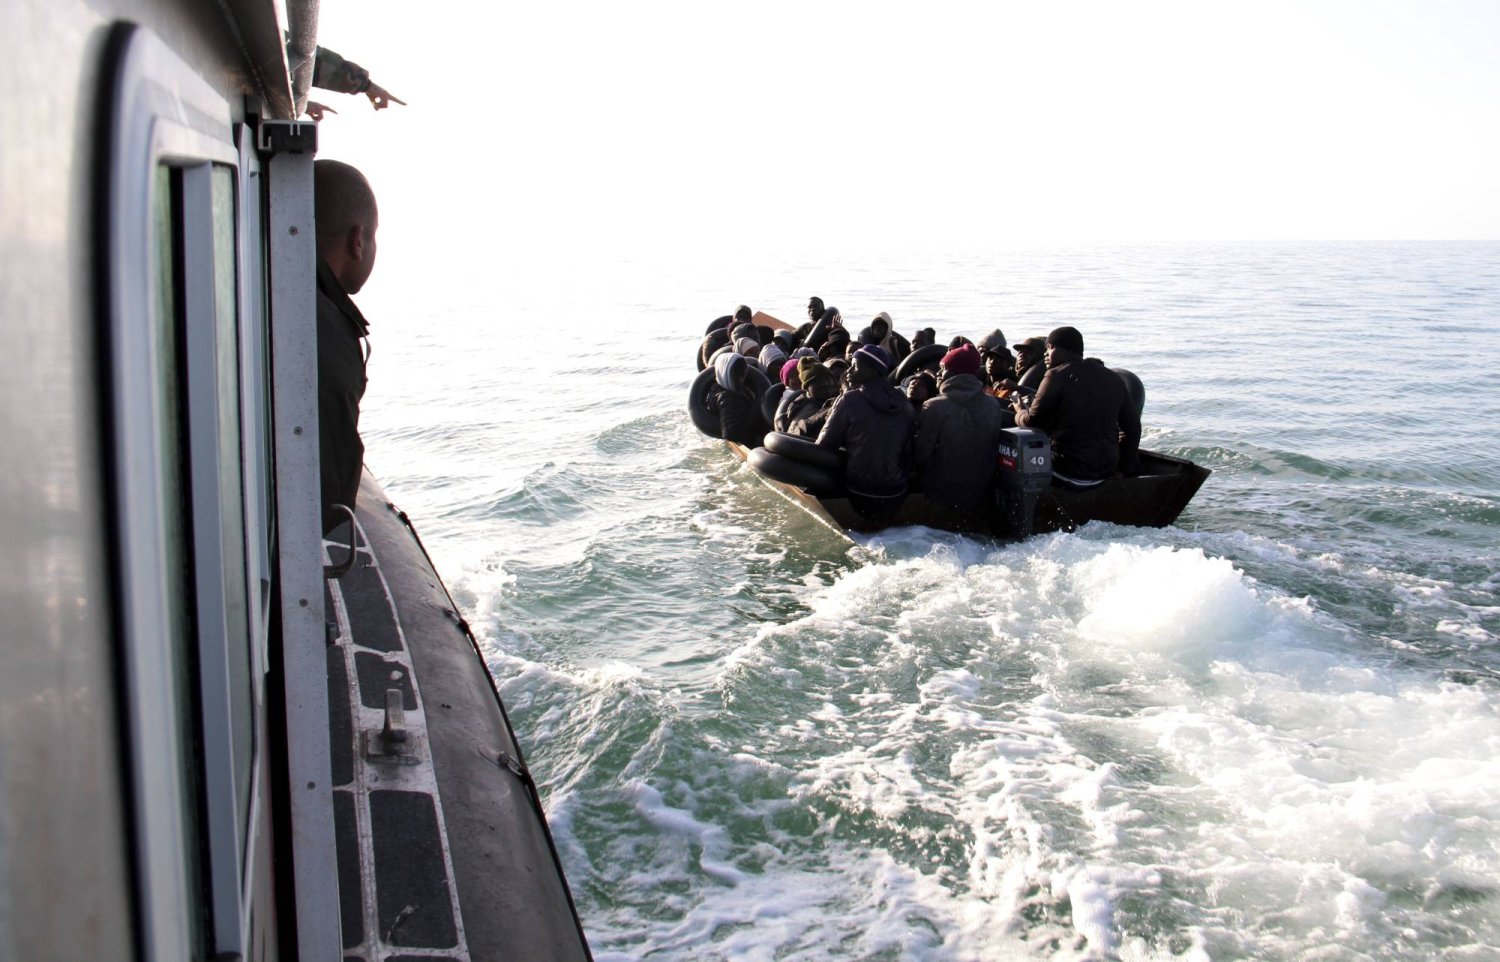 نحو 20 ألف مهاجر يتحينون في ظروف مزرية فرصة الهروب للقارة العجوز بواسطة قوارب الموت (أ.ب)